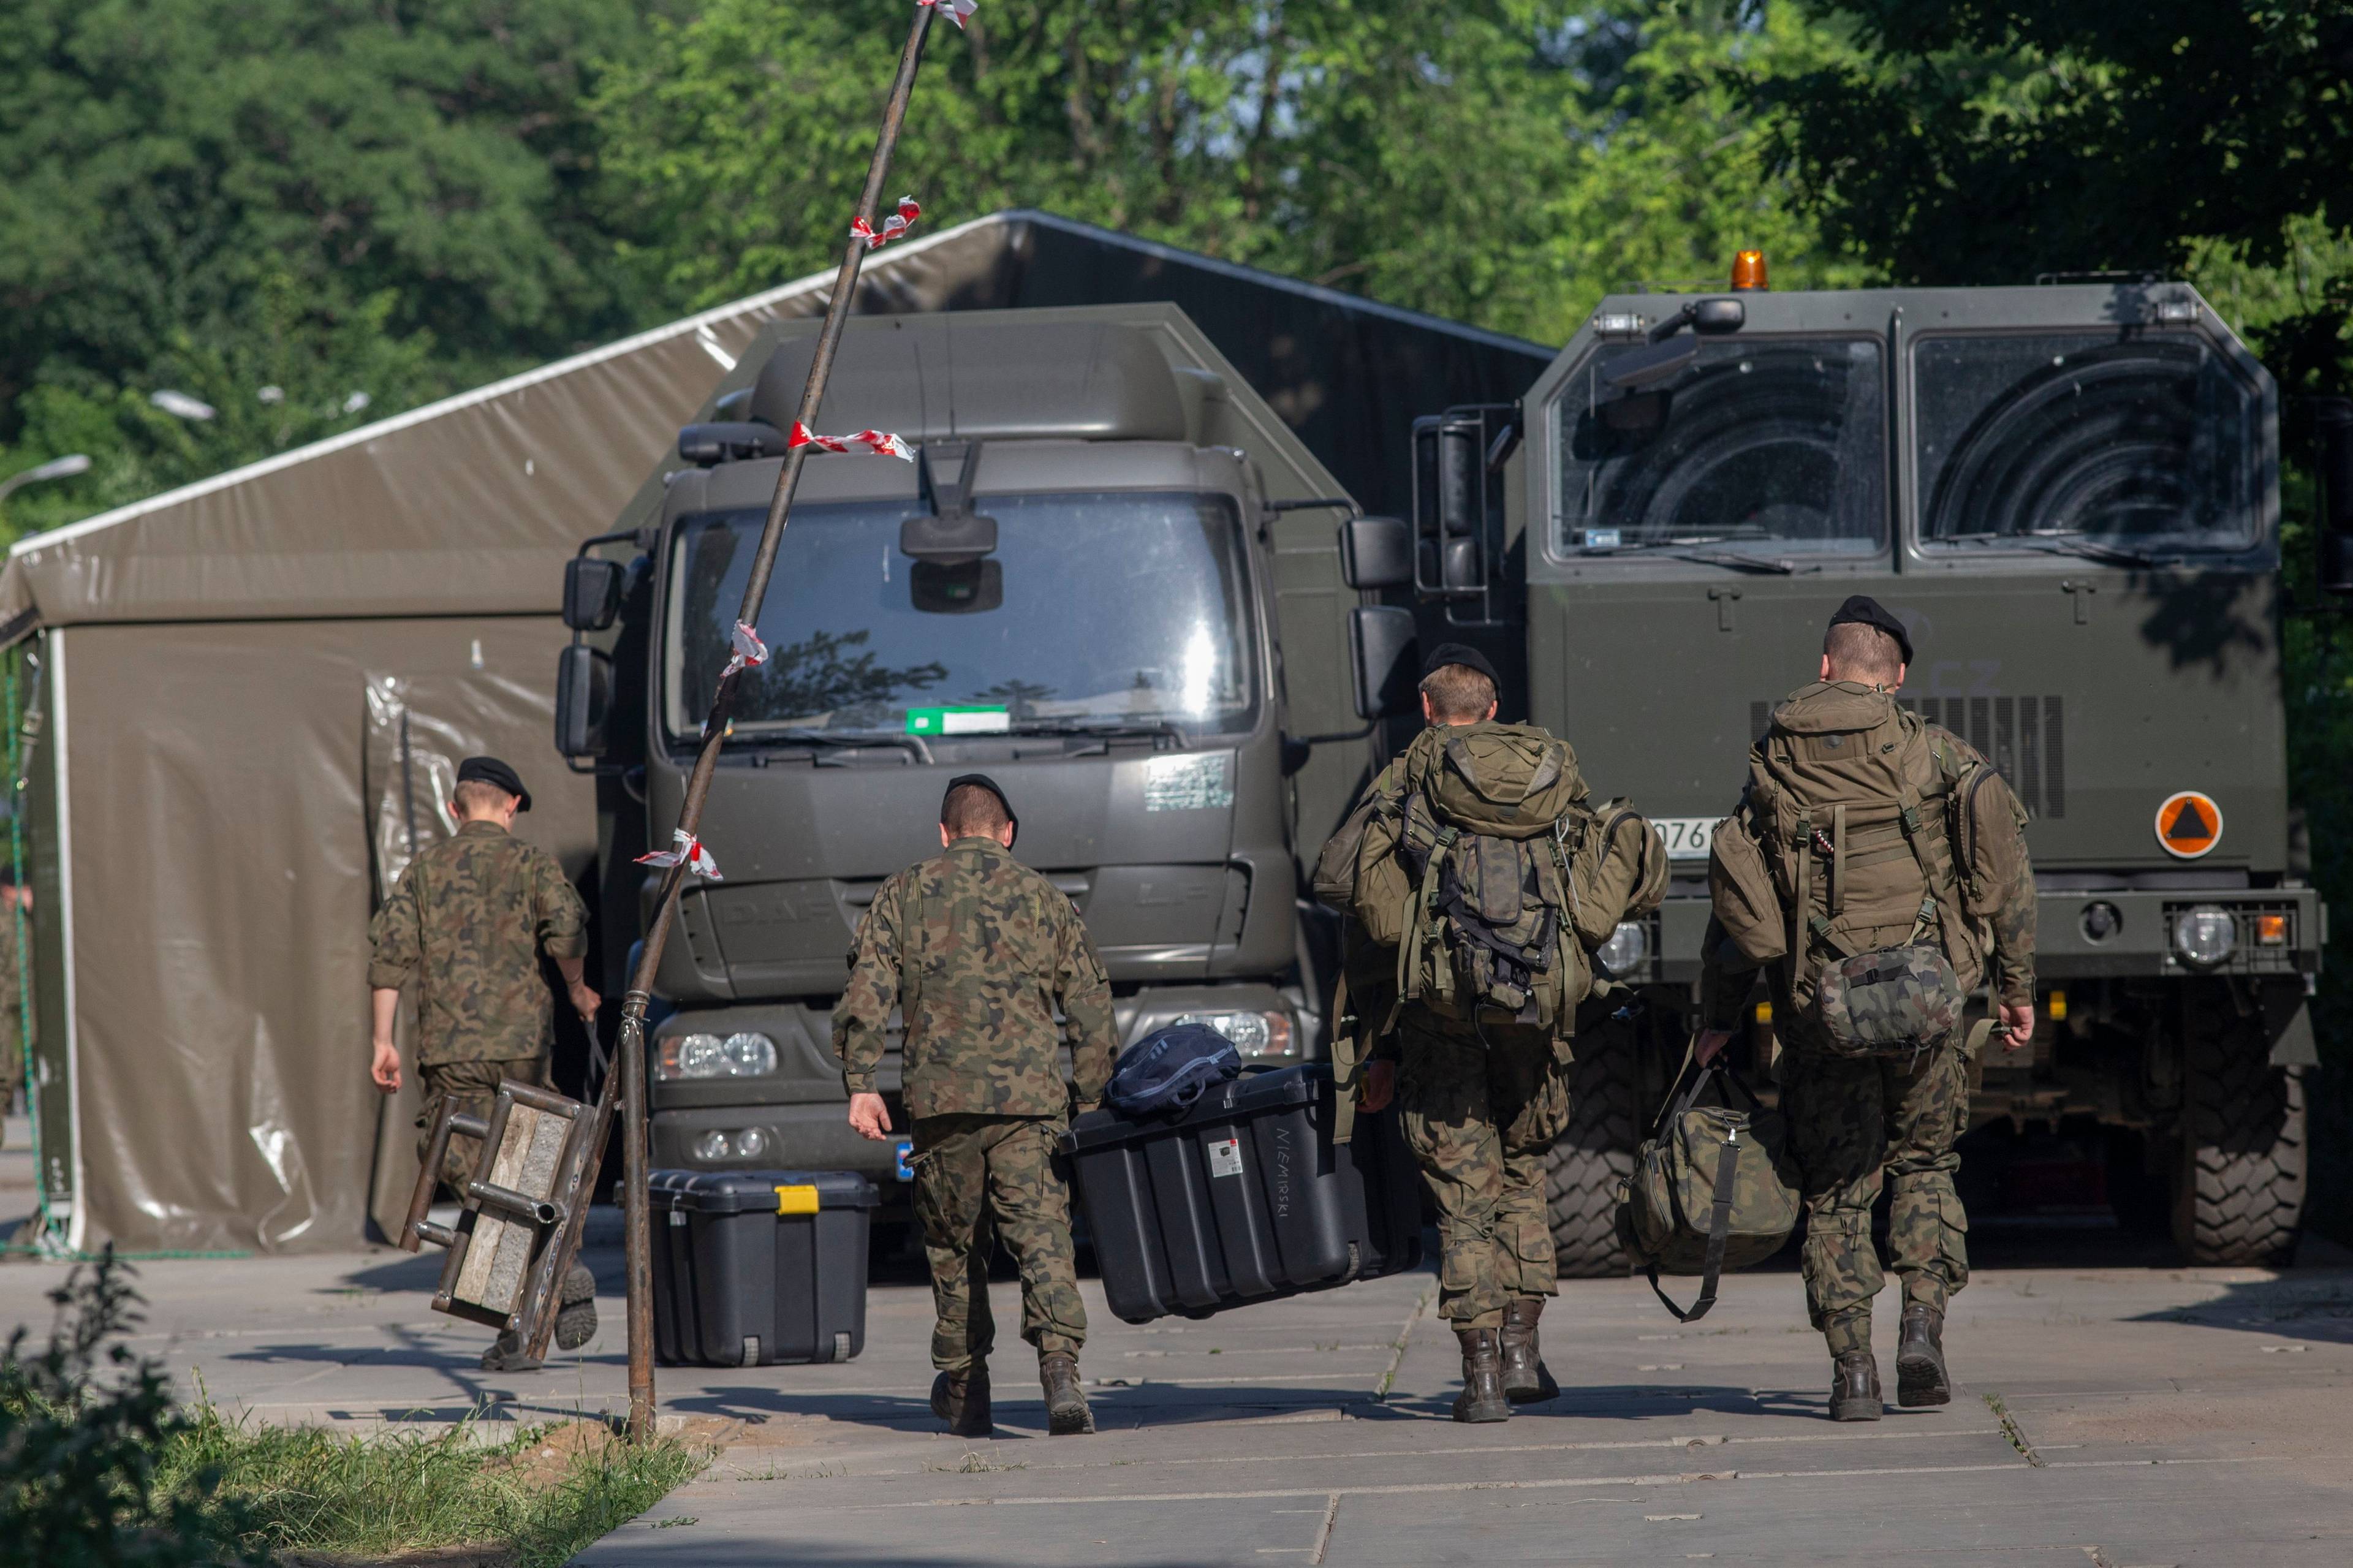 Żołnierze w mundurach idący do wojskowych ciężarówek w Białowieży (zdjęcie od tyłu)